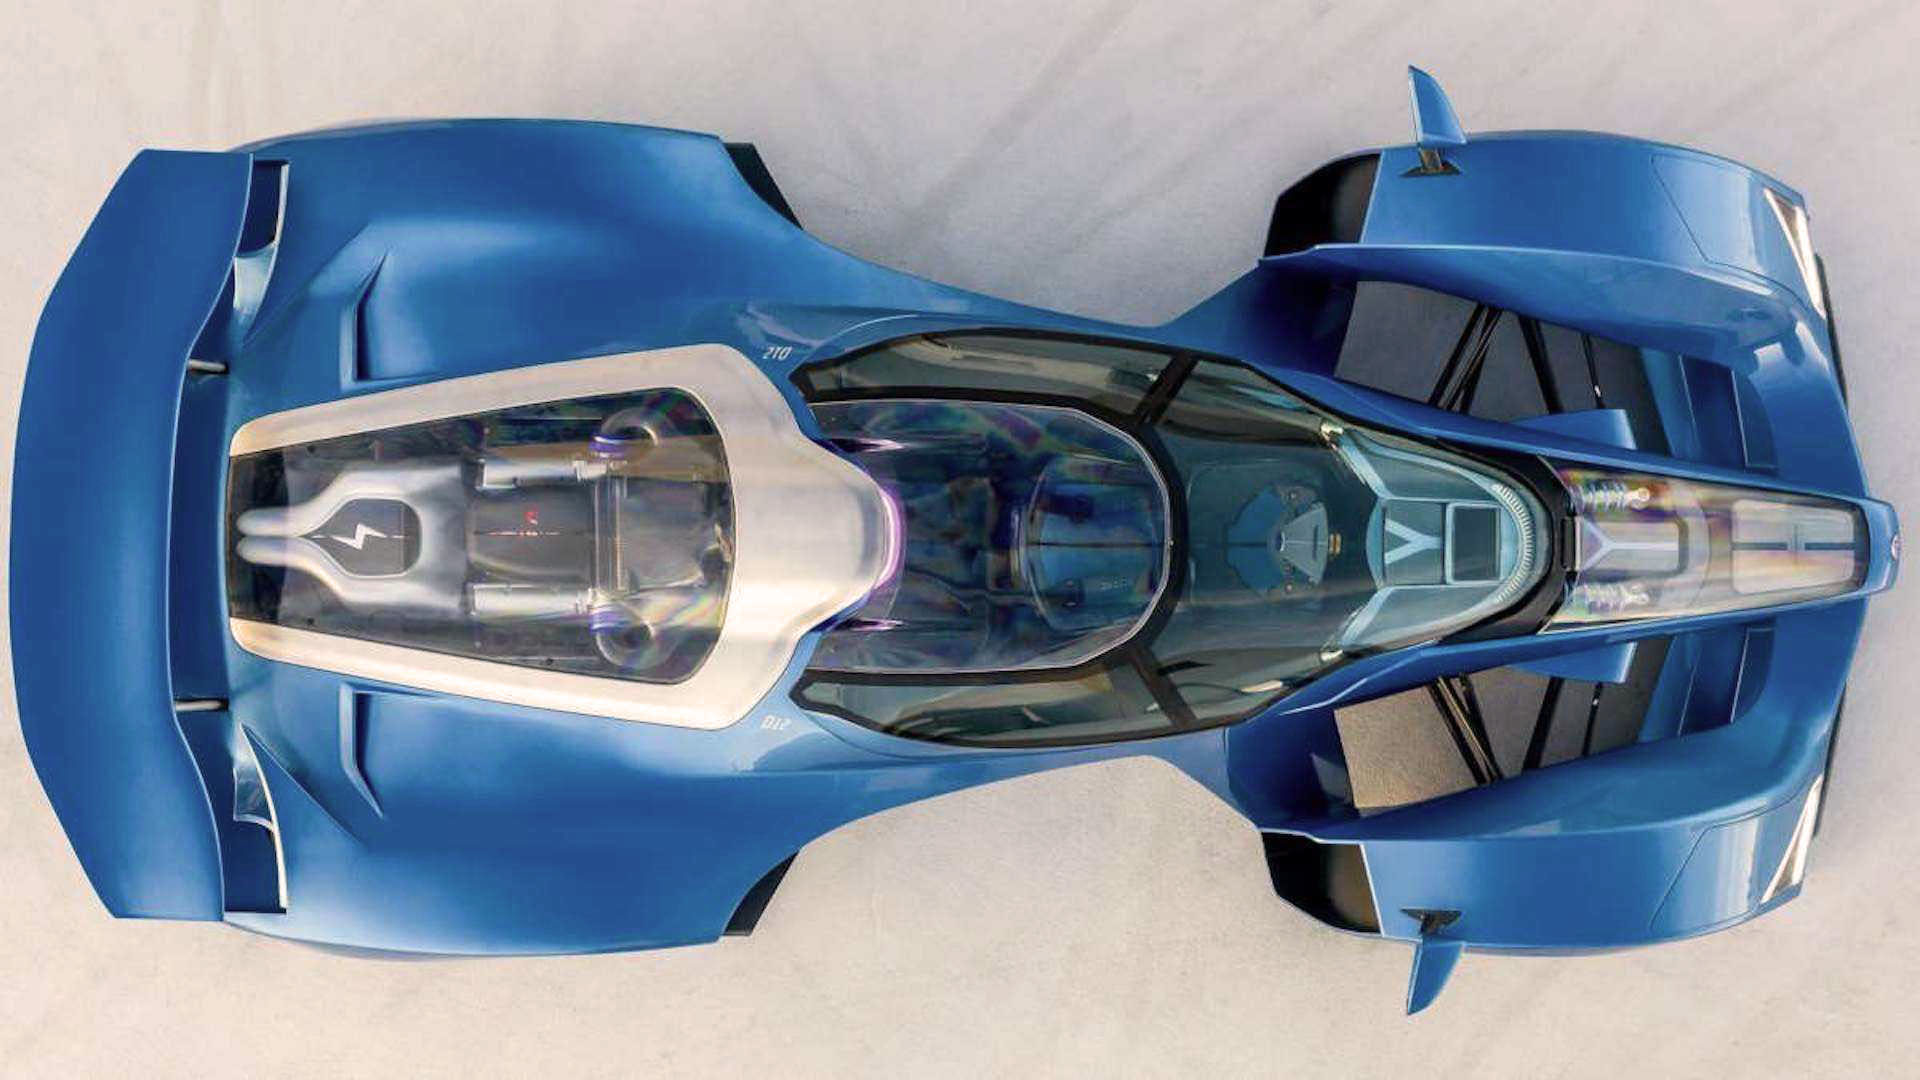 La vista superior del Delage D12 muestra su silueta indiscutiblemente inspirada en un coche de Fórmula 1